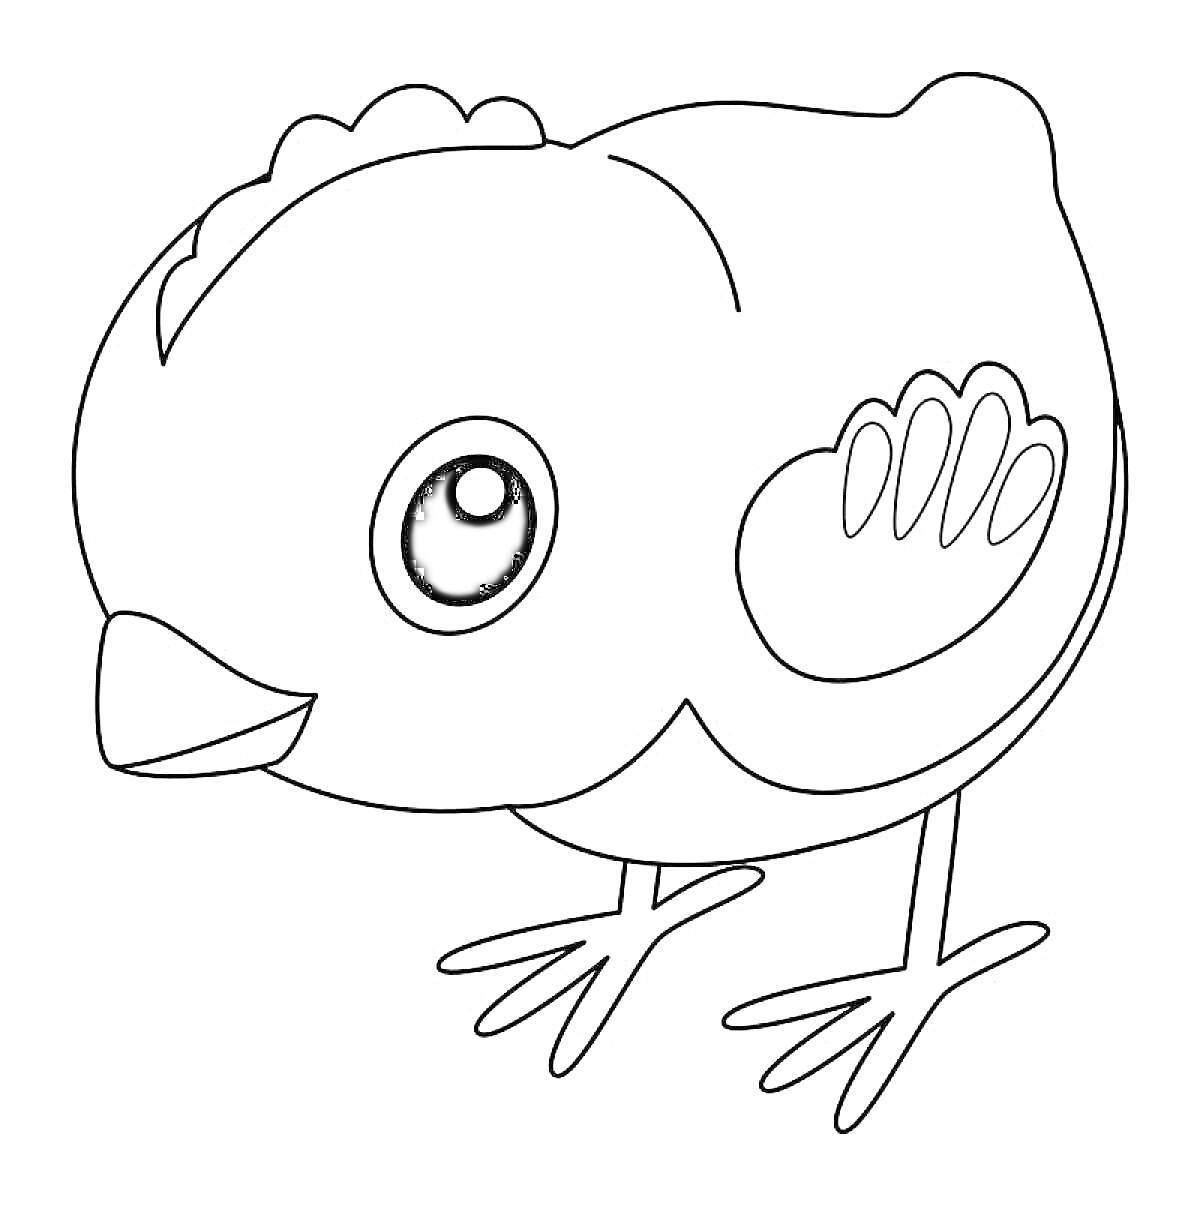 Раскраска Птенец с большими глазами и короткими крыльями